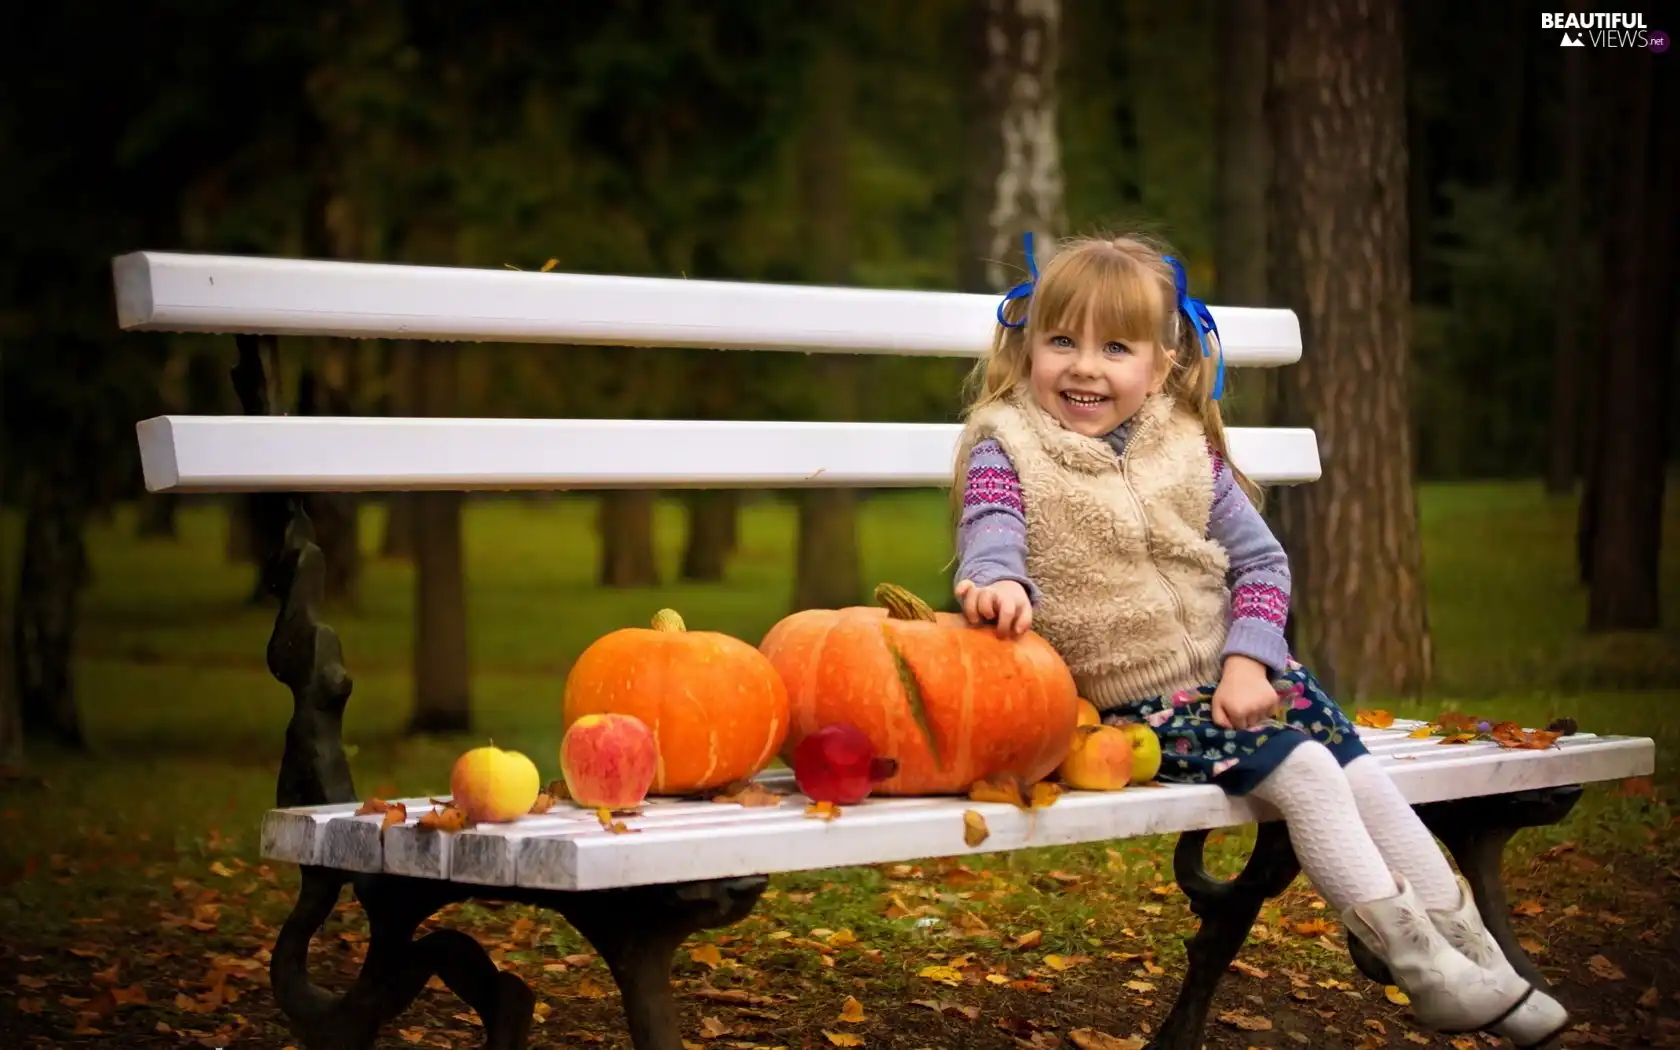 Bench, pumpkin, girl, Park, Kid